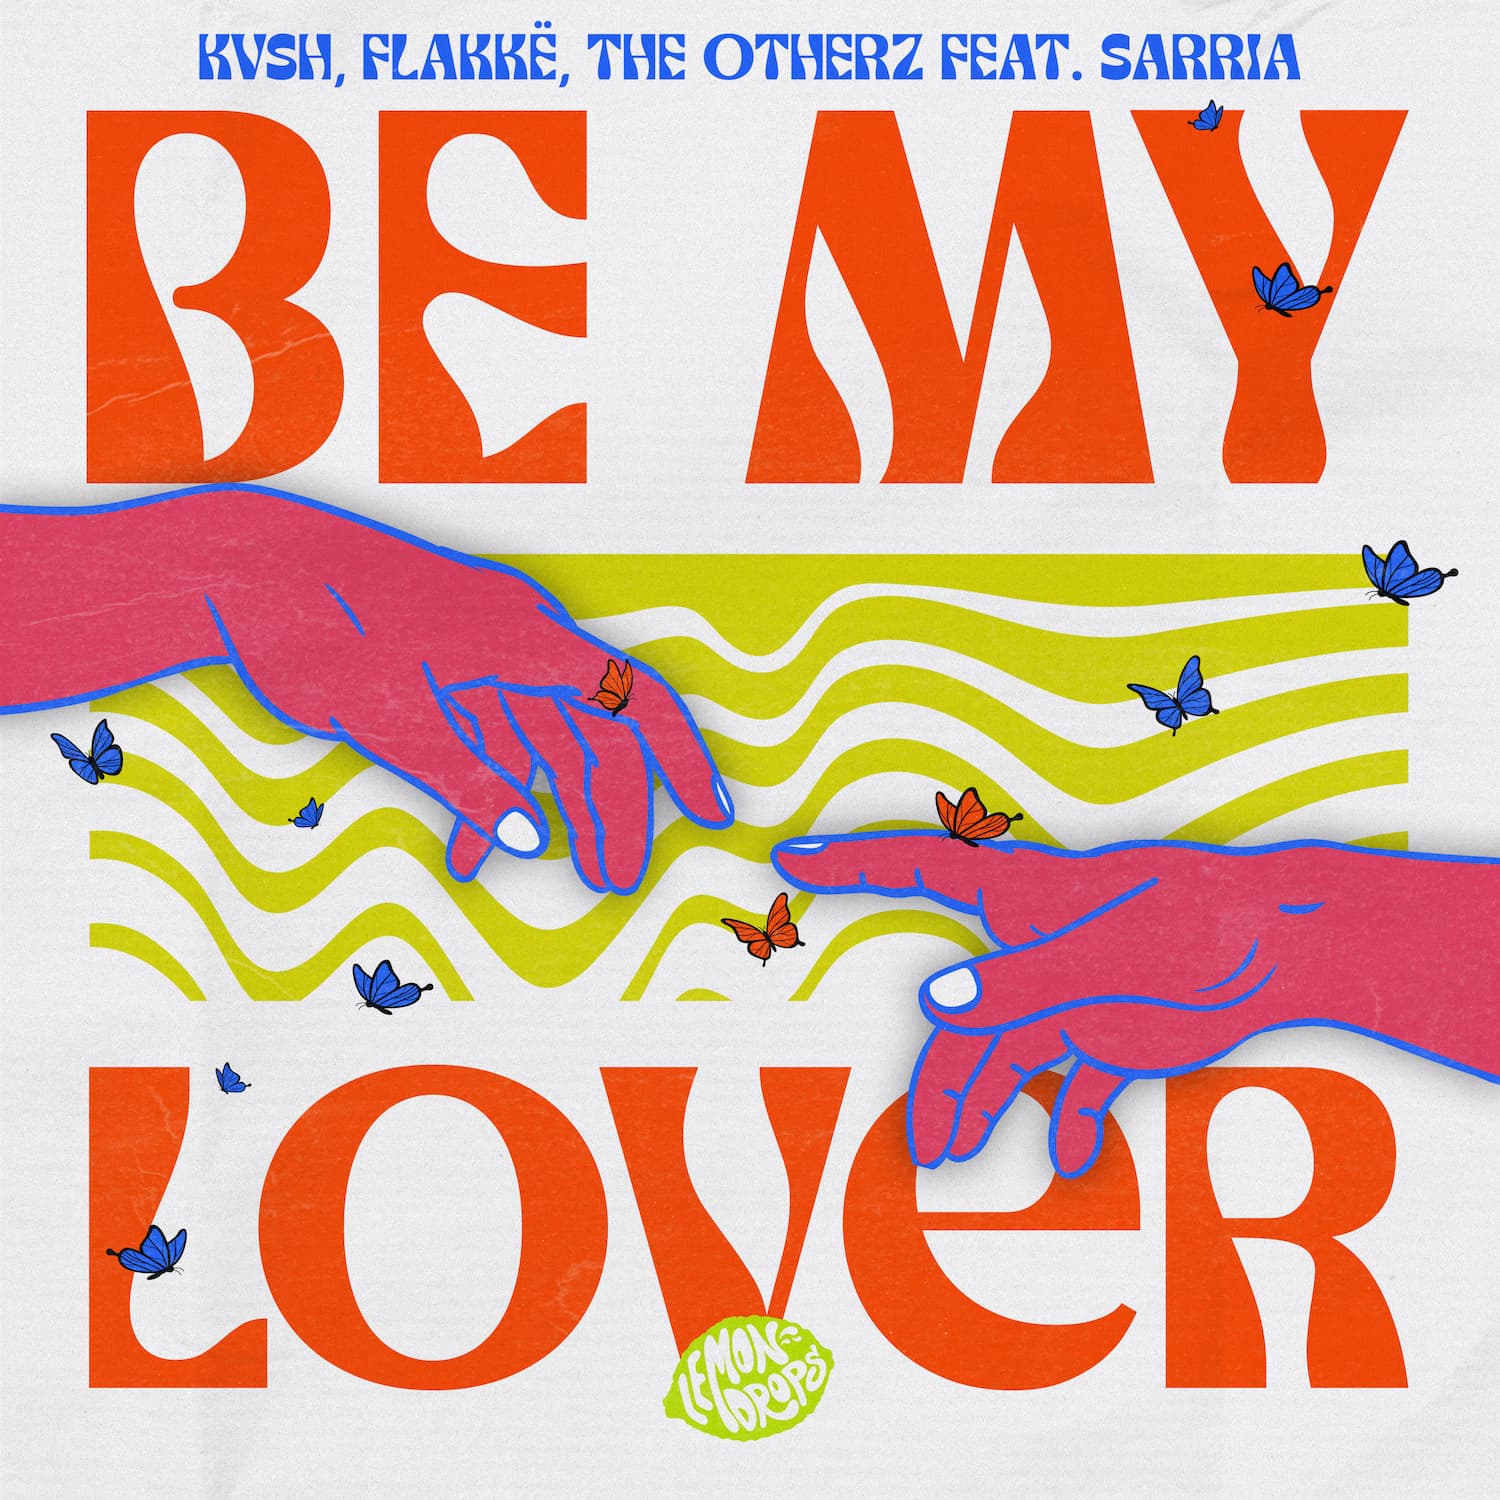 KVSH estreia sua nova faixa "Be My Lover" no palco New Dance Order!